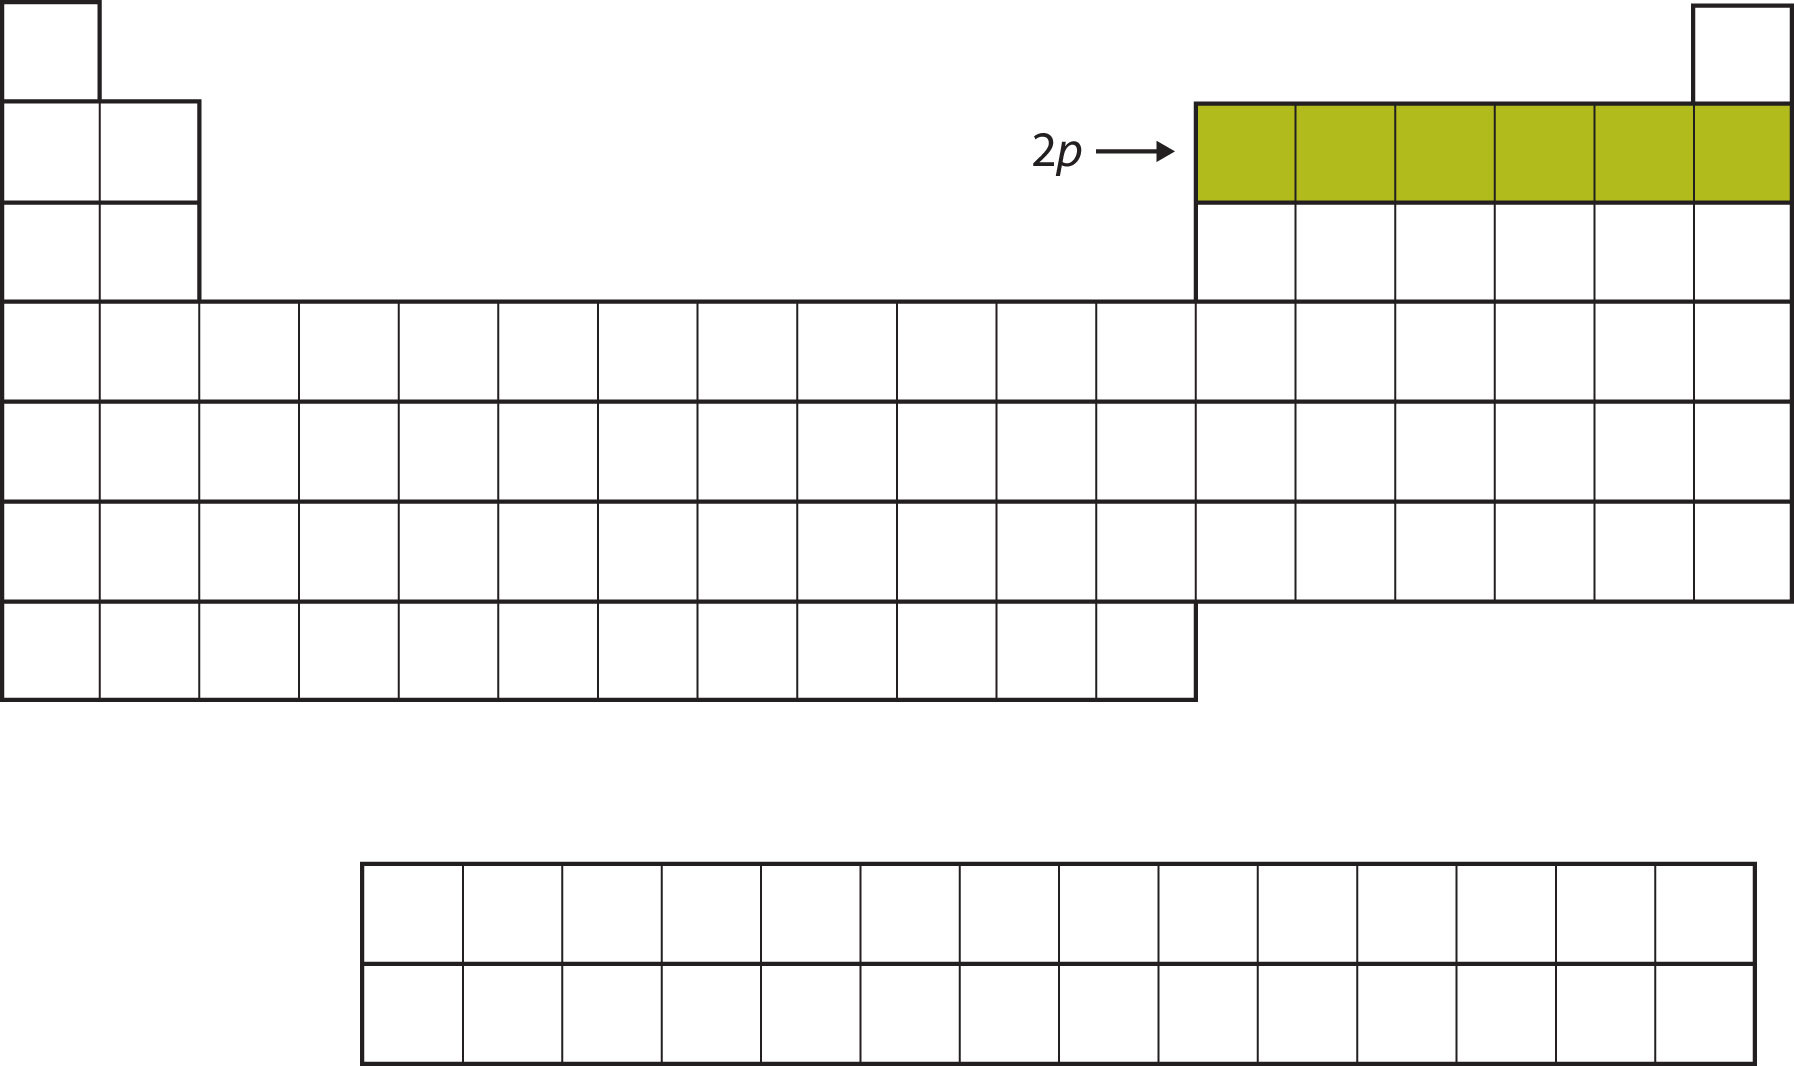 Tabla periódica vacía, con 6 cuadrados en la segunda fila a la derecha rellenados en un color verde mostaza.